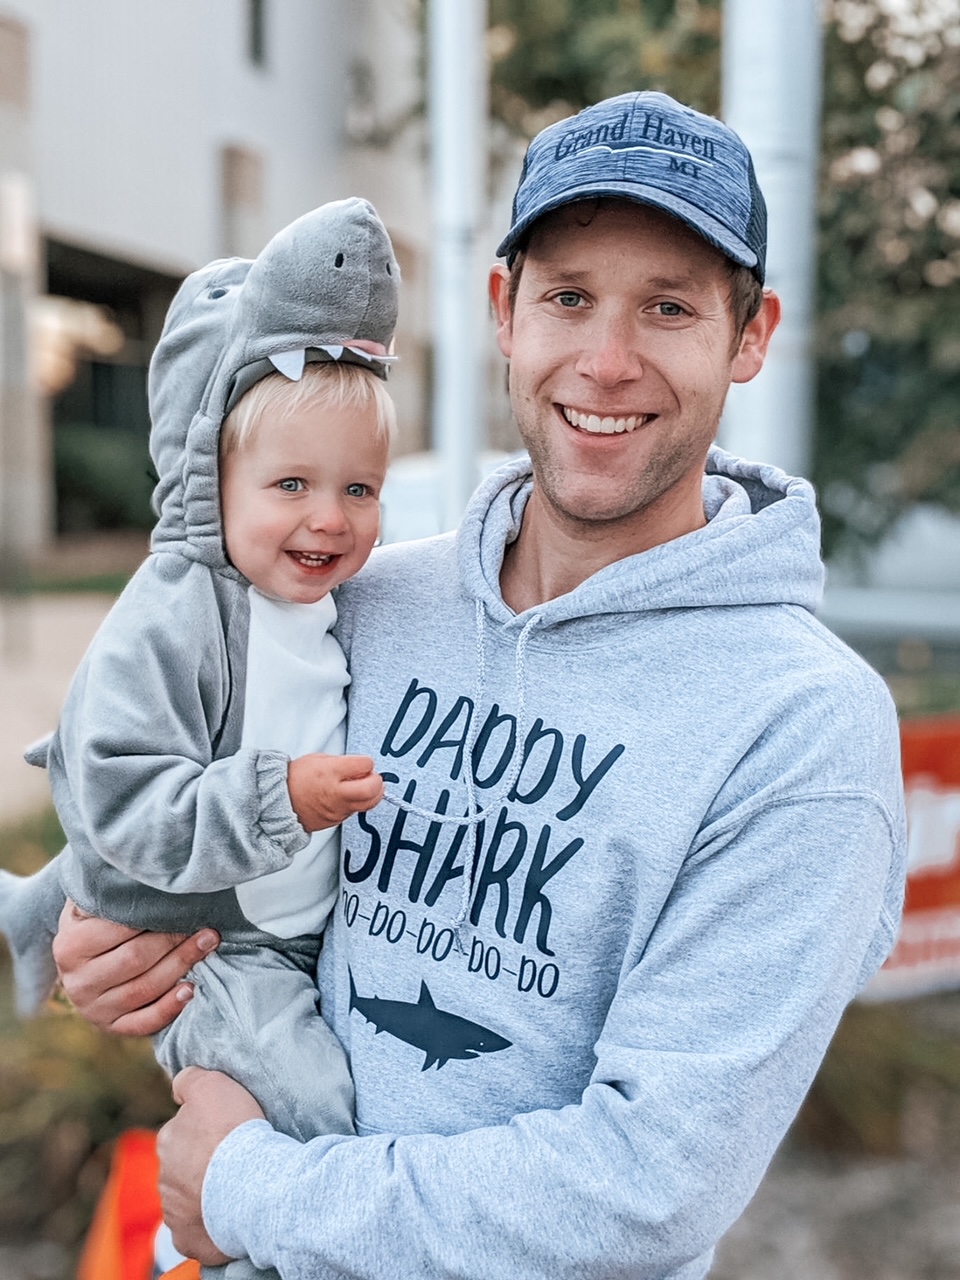 Daddy shark shirt